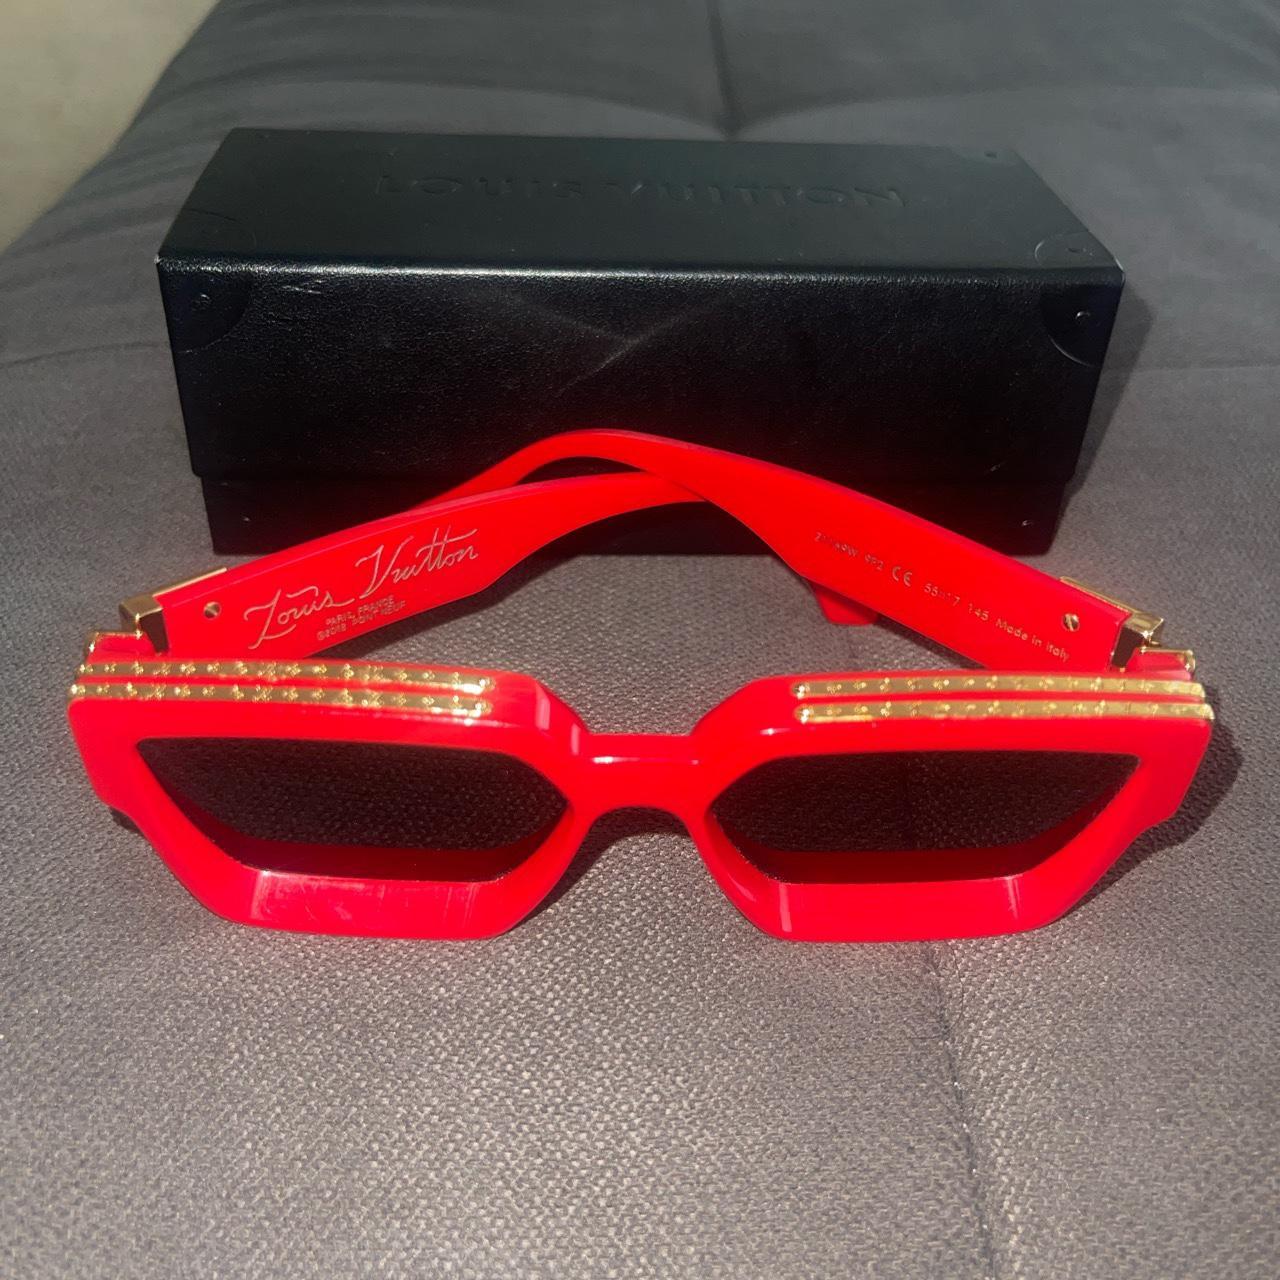 Louis vuitton-millionaire-sunglasses - Depop